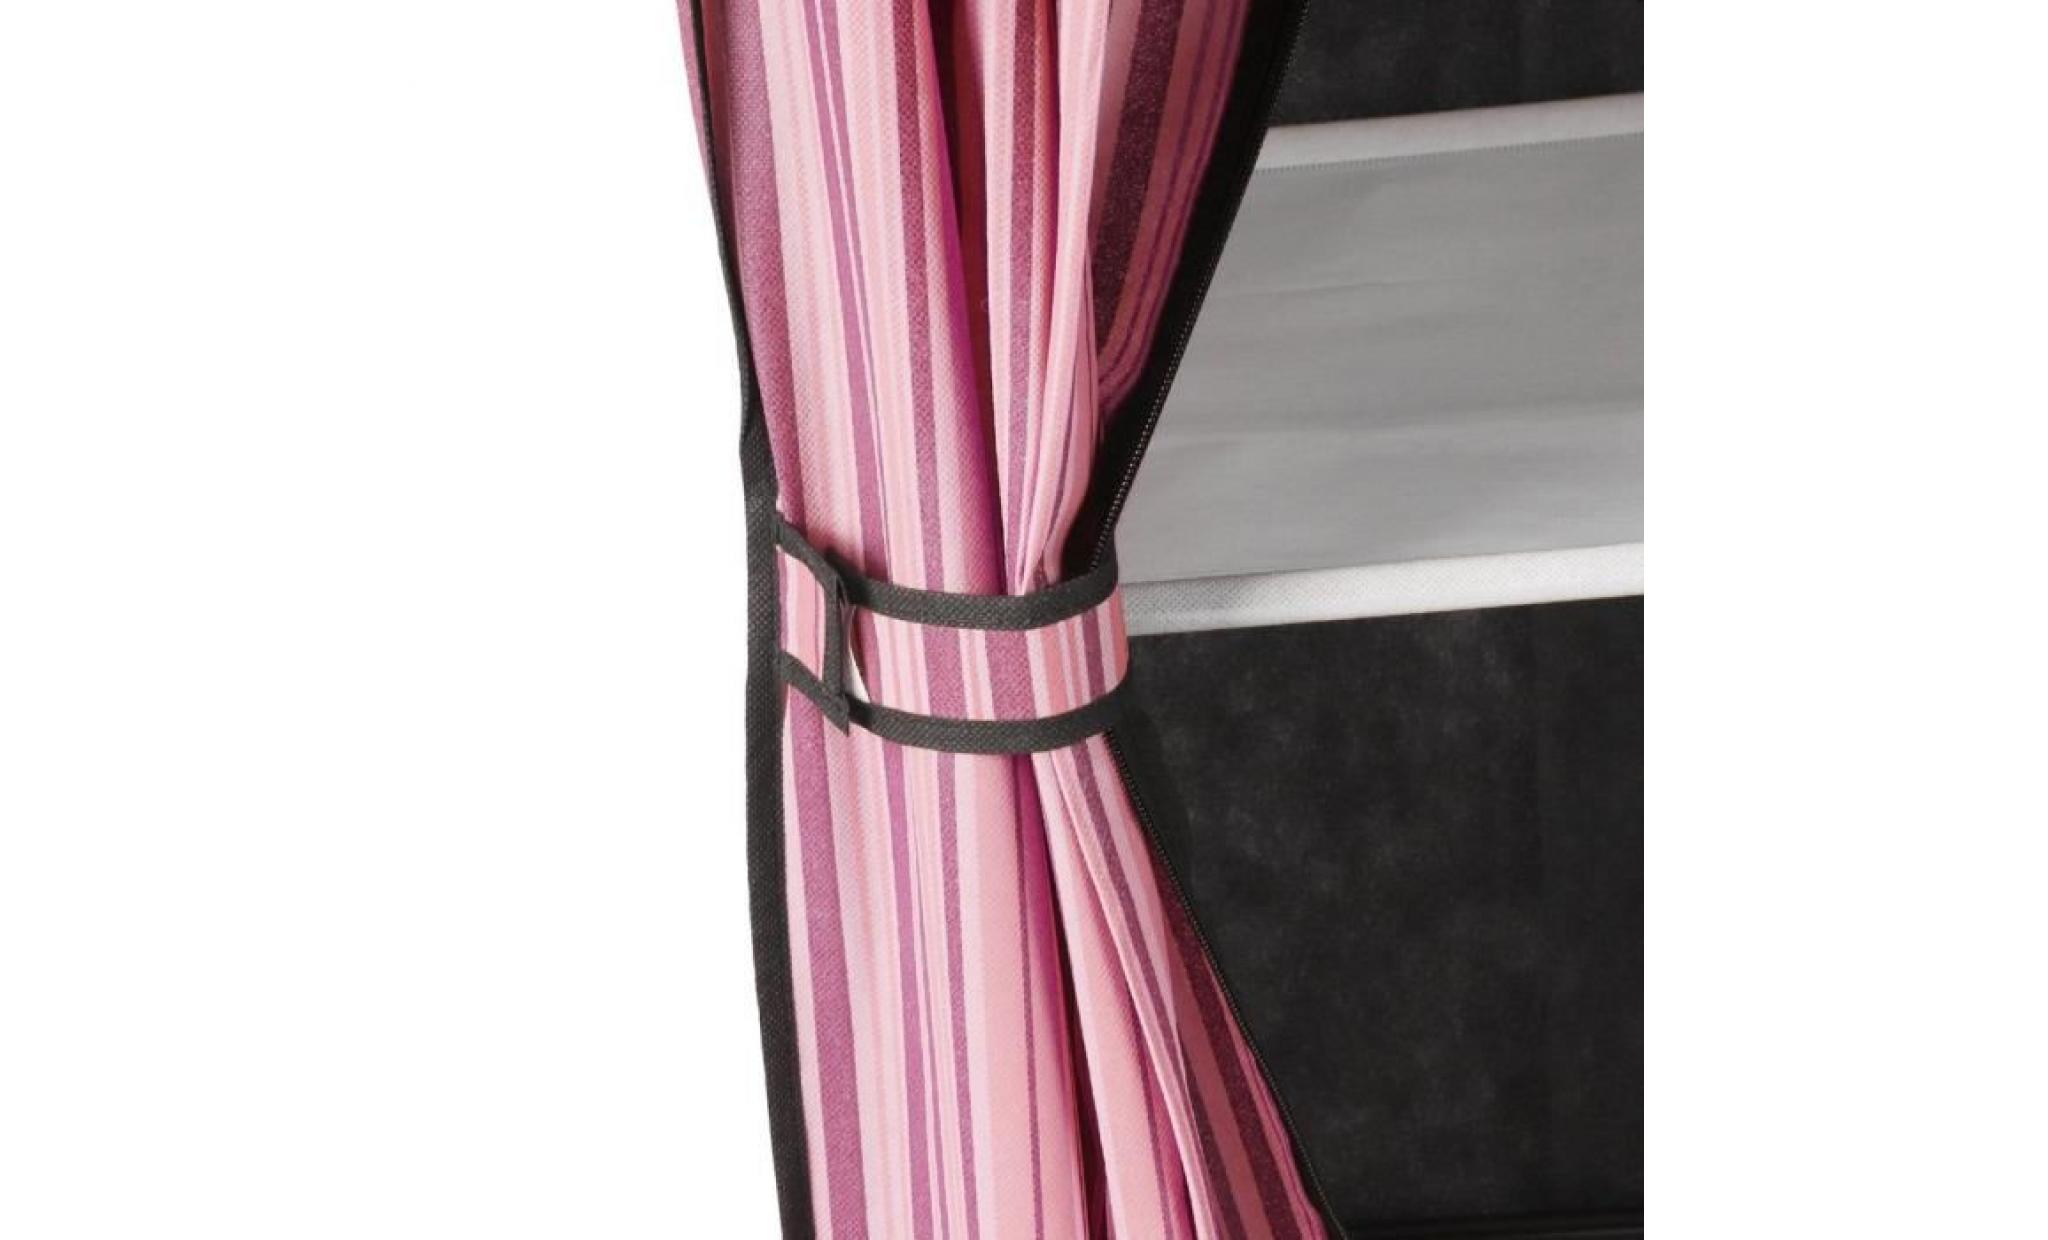 dressing penderie avec housse tissu 170 * 128cm armoire de rangement rose pas cher